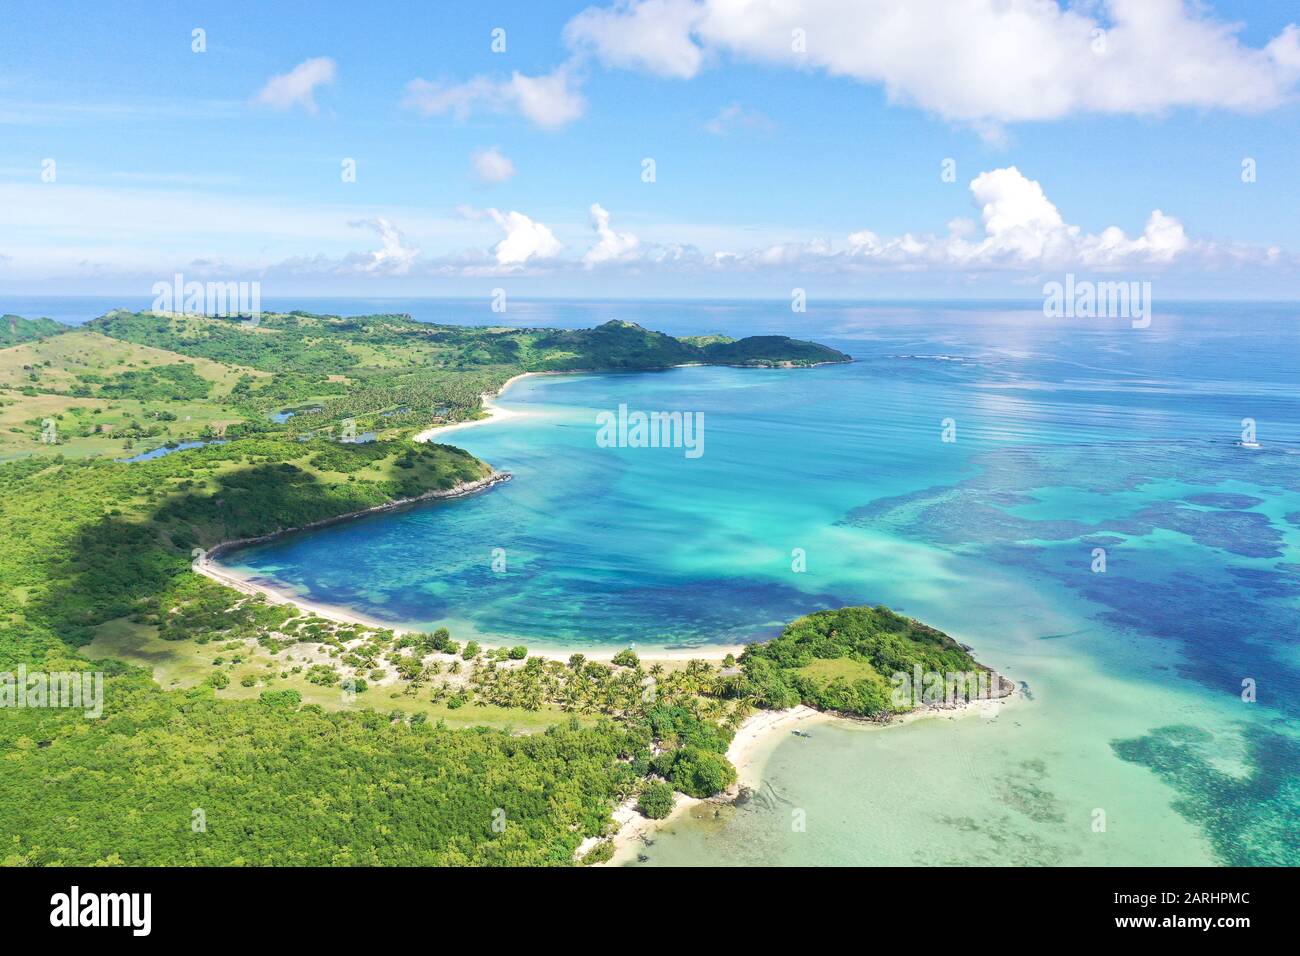 Une île tropicale avec un lagon turquoise et une banque de sable. Îles Caramoan, Philippines. Belles îles, vue d'en haut. Concept de vacances d'été et de voyage. Banque D'Images